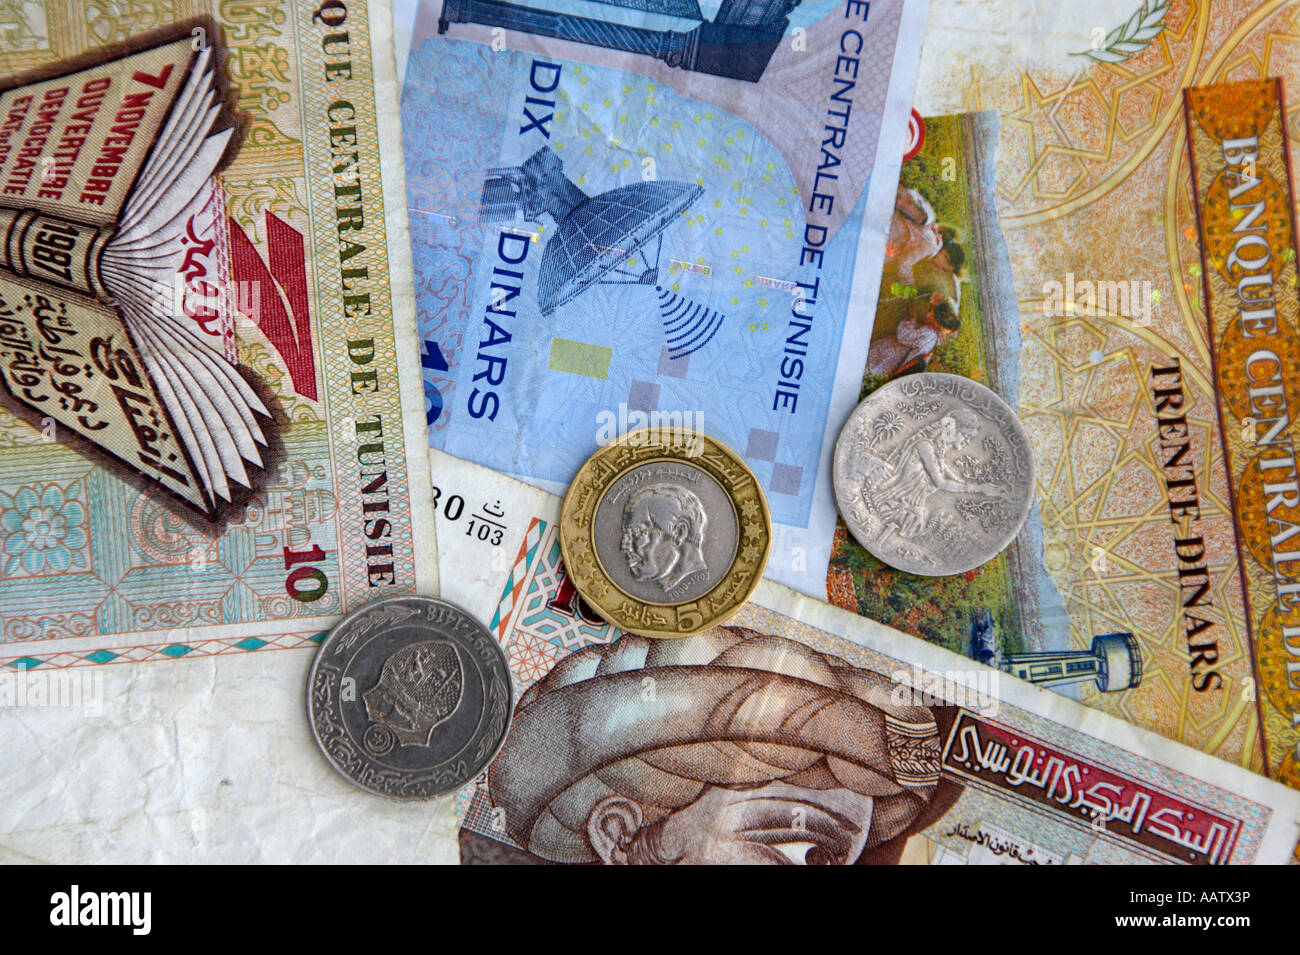 Dinars tunisiens les billets de banque et les pièces de 10 et 30 notes 1 dinar et 5 pièces de monnaie dinar Banque D'Images